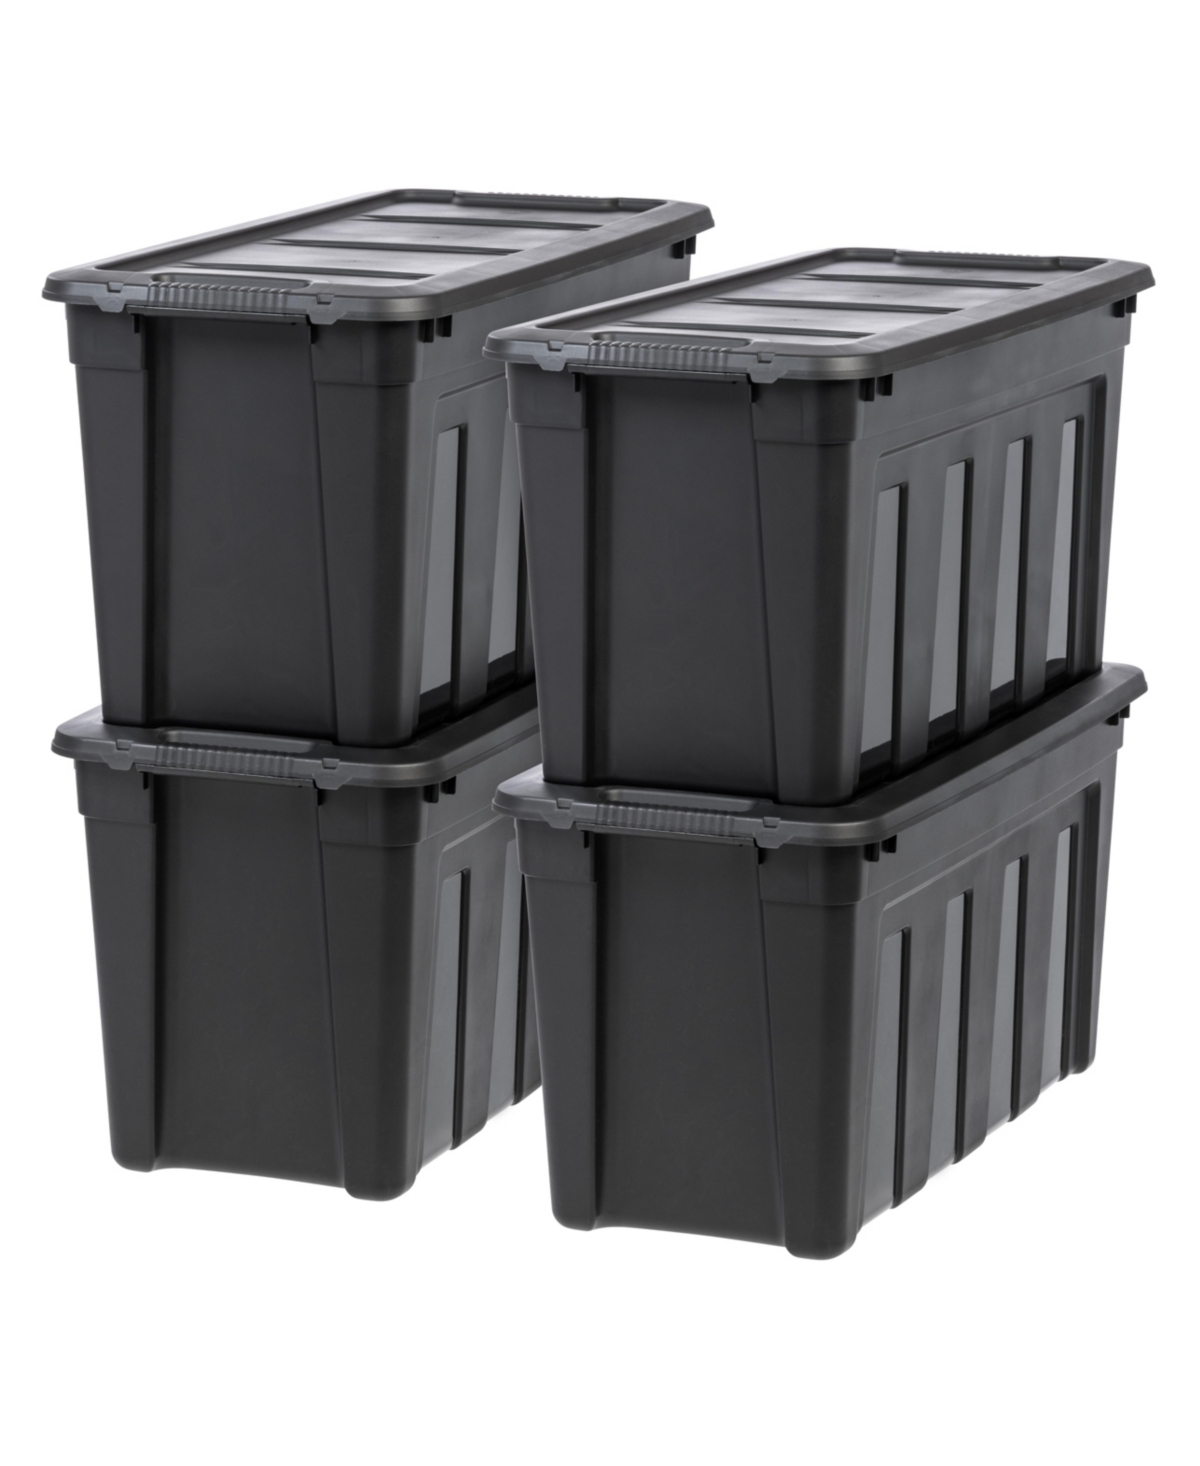 31 Gallon Heavy-Duty Storage Plastic Bin Tote Container, Black, Set of 4 - Black